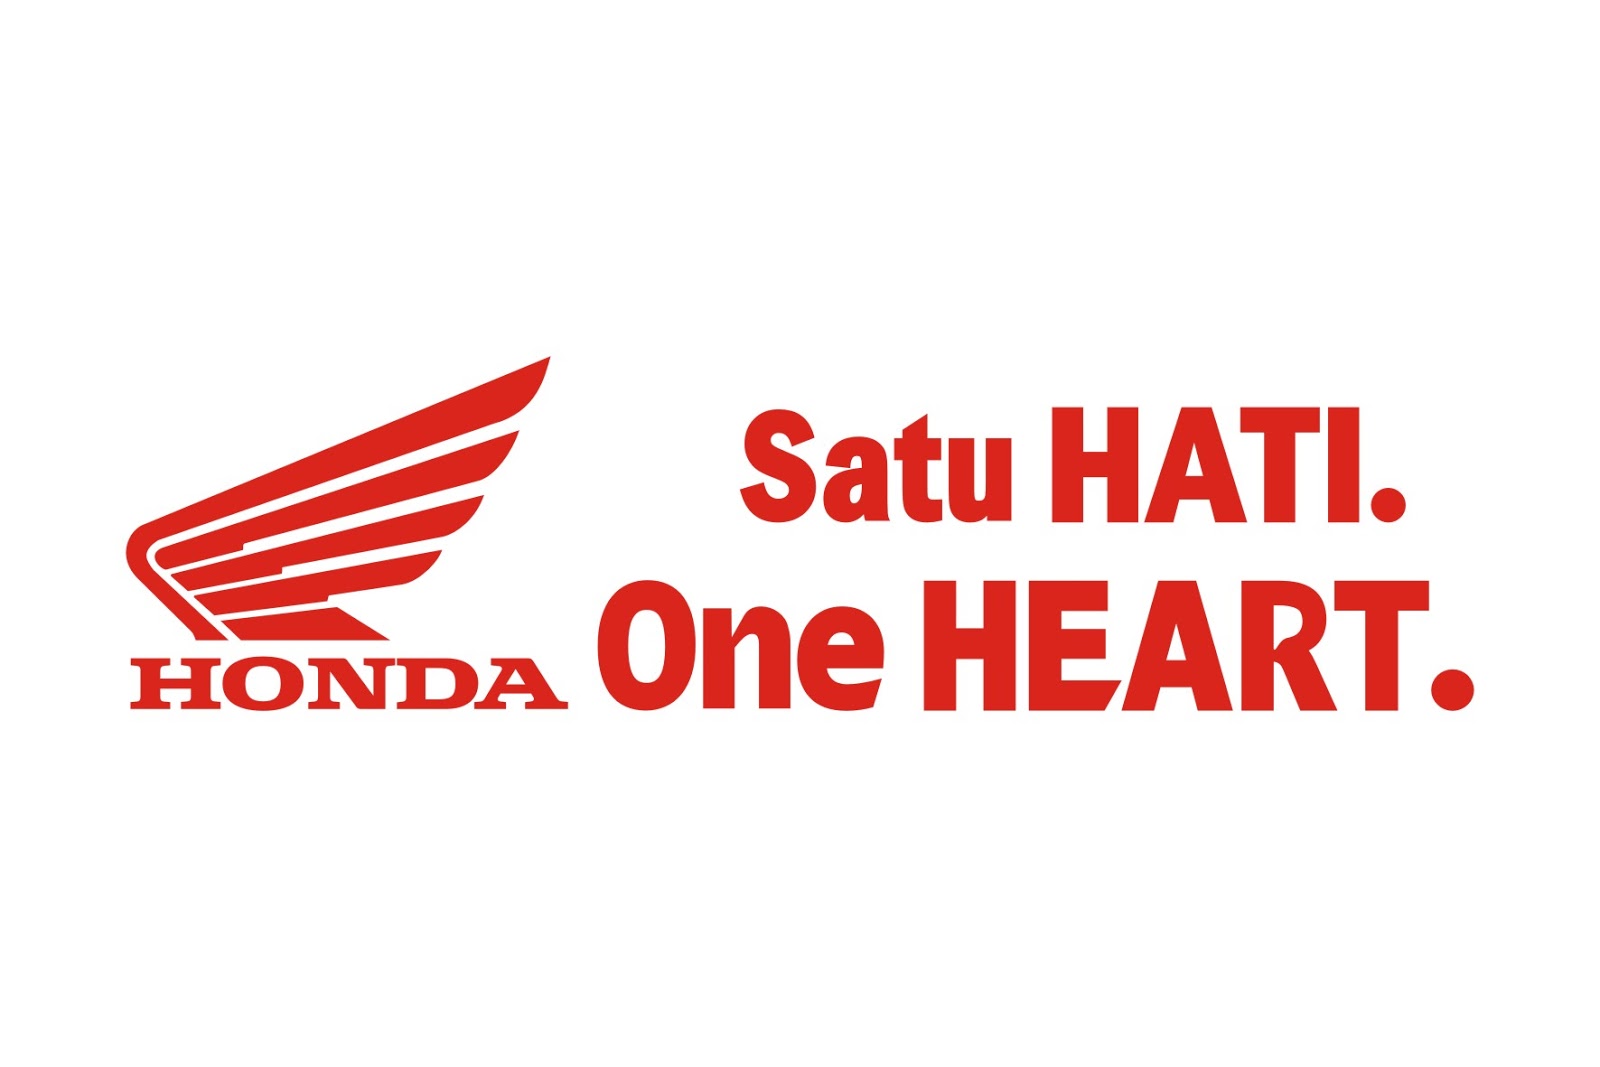 Kredit Motor Honda Bandung